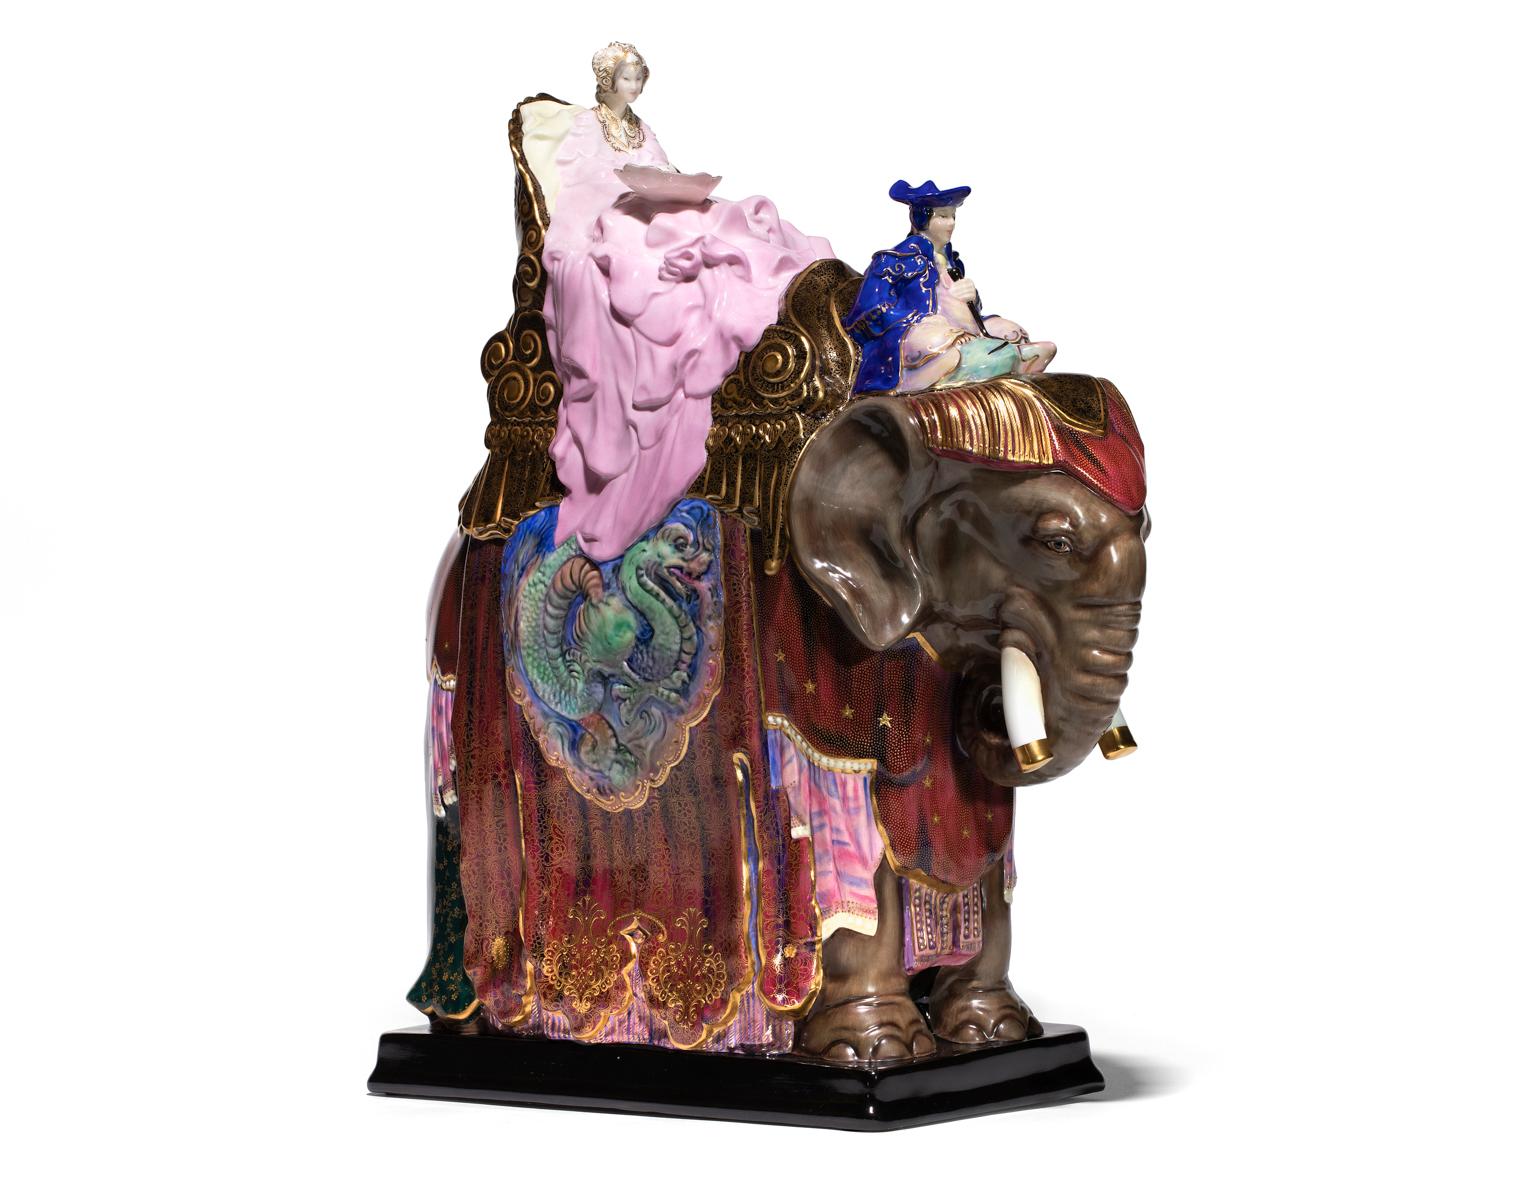 La princesse Badoura est la figurine la plus prestigieuse et la plus chère jamais réalisée par Royal Doulton. Il a été fabriqué sur commande pour des clients fortunés pendant près de 50 ans et une version spéciale en couleur a été conçue pour